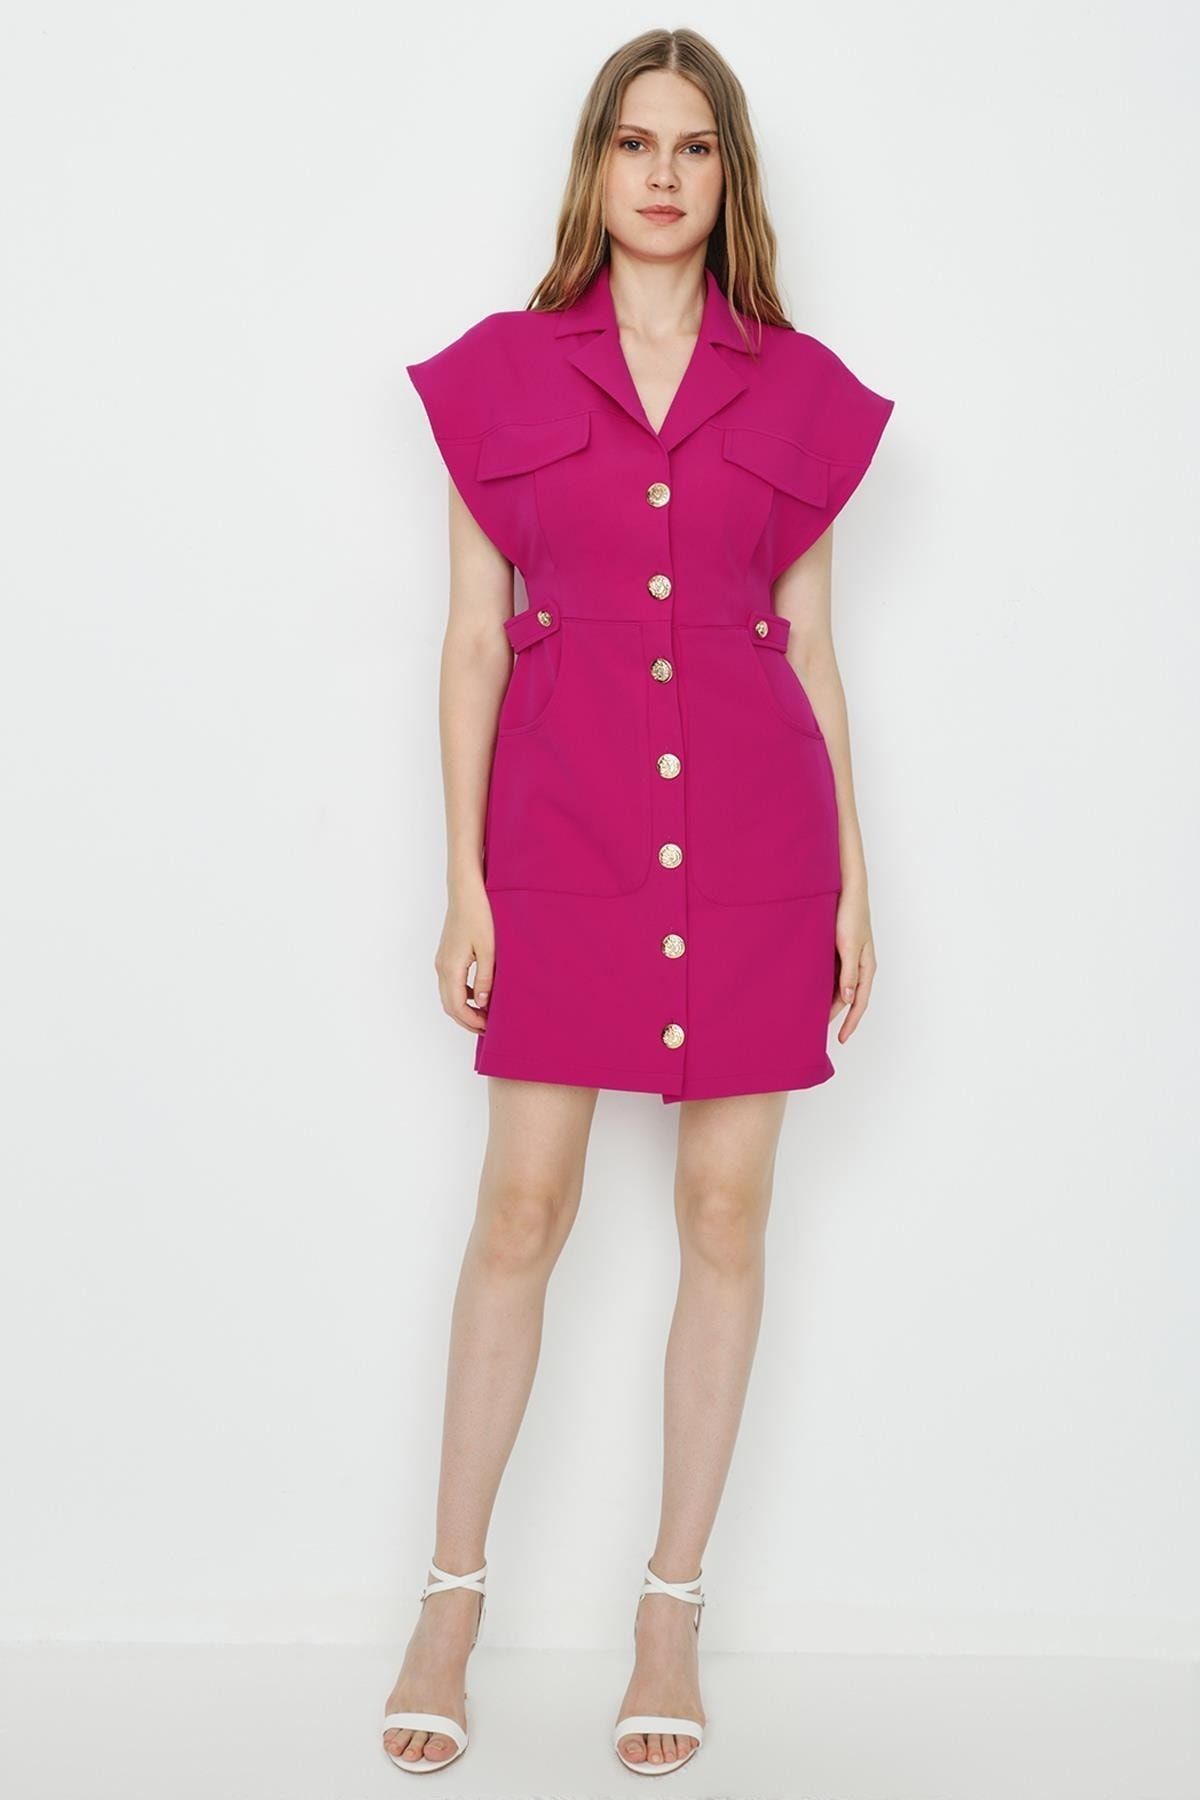 Select Moda Kadın Dokuma Düğme Detaylı Gömlek Elbise